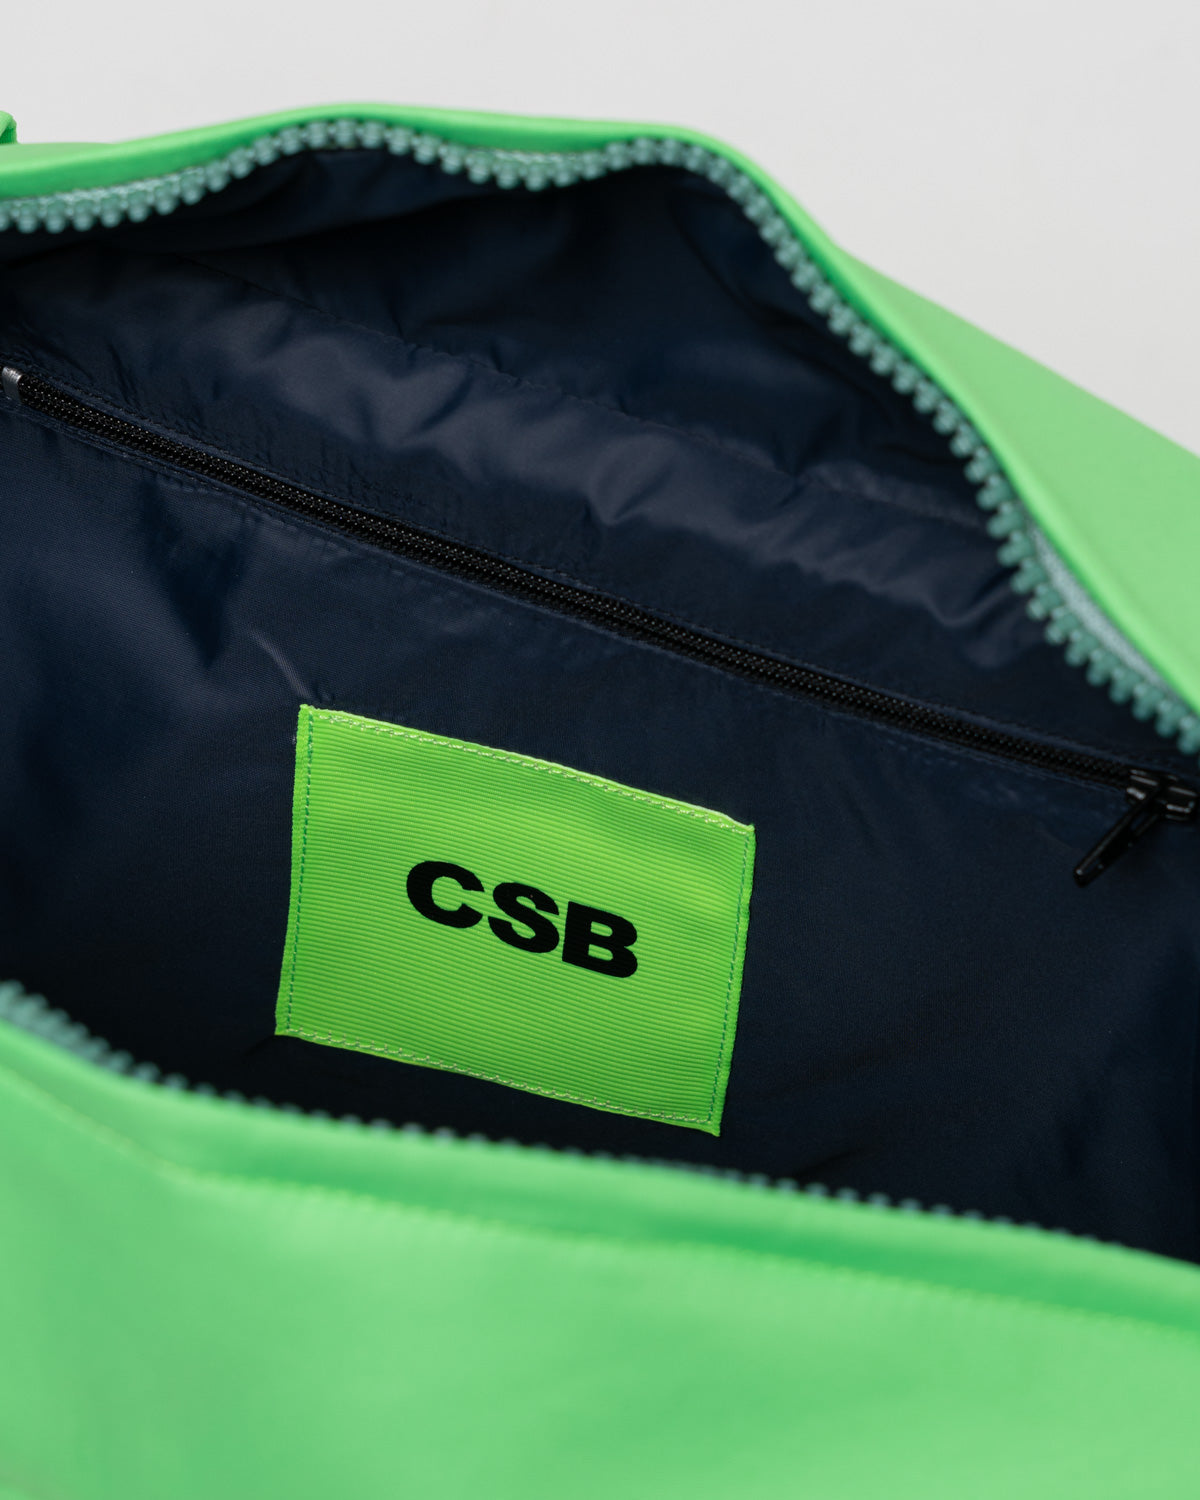 Neon Green Puffer Bag